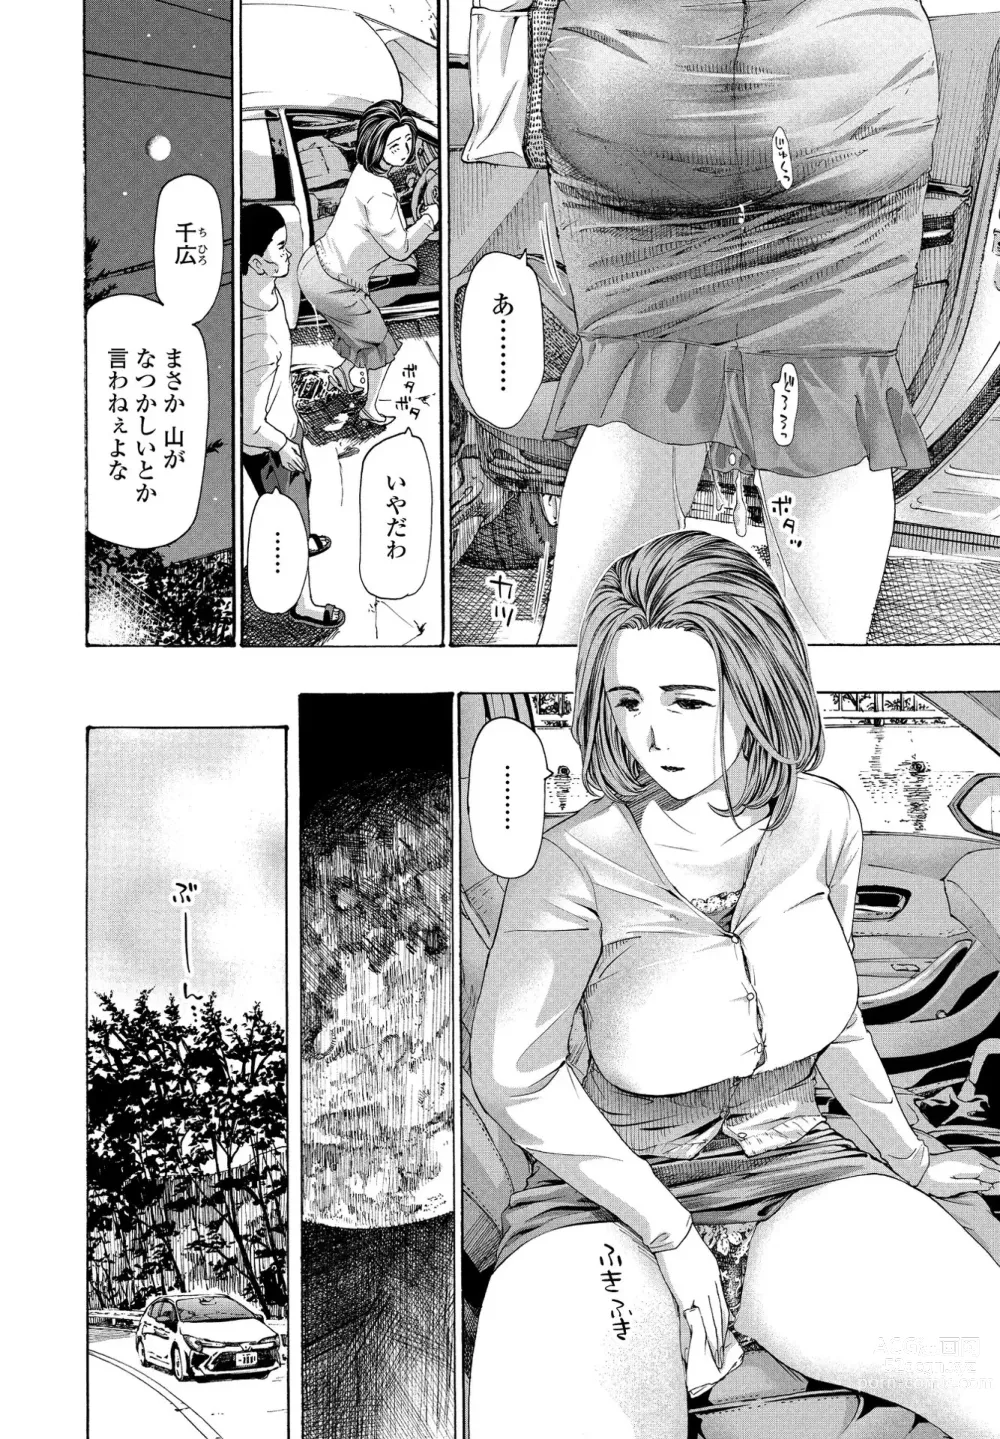 Page 58 of manga Hinangoya nite